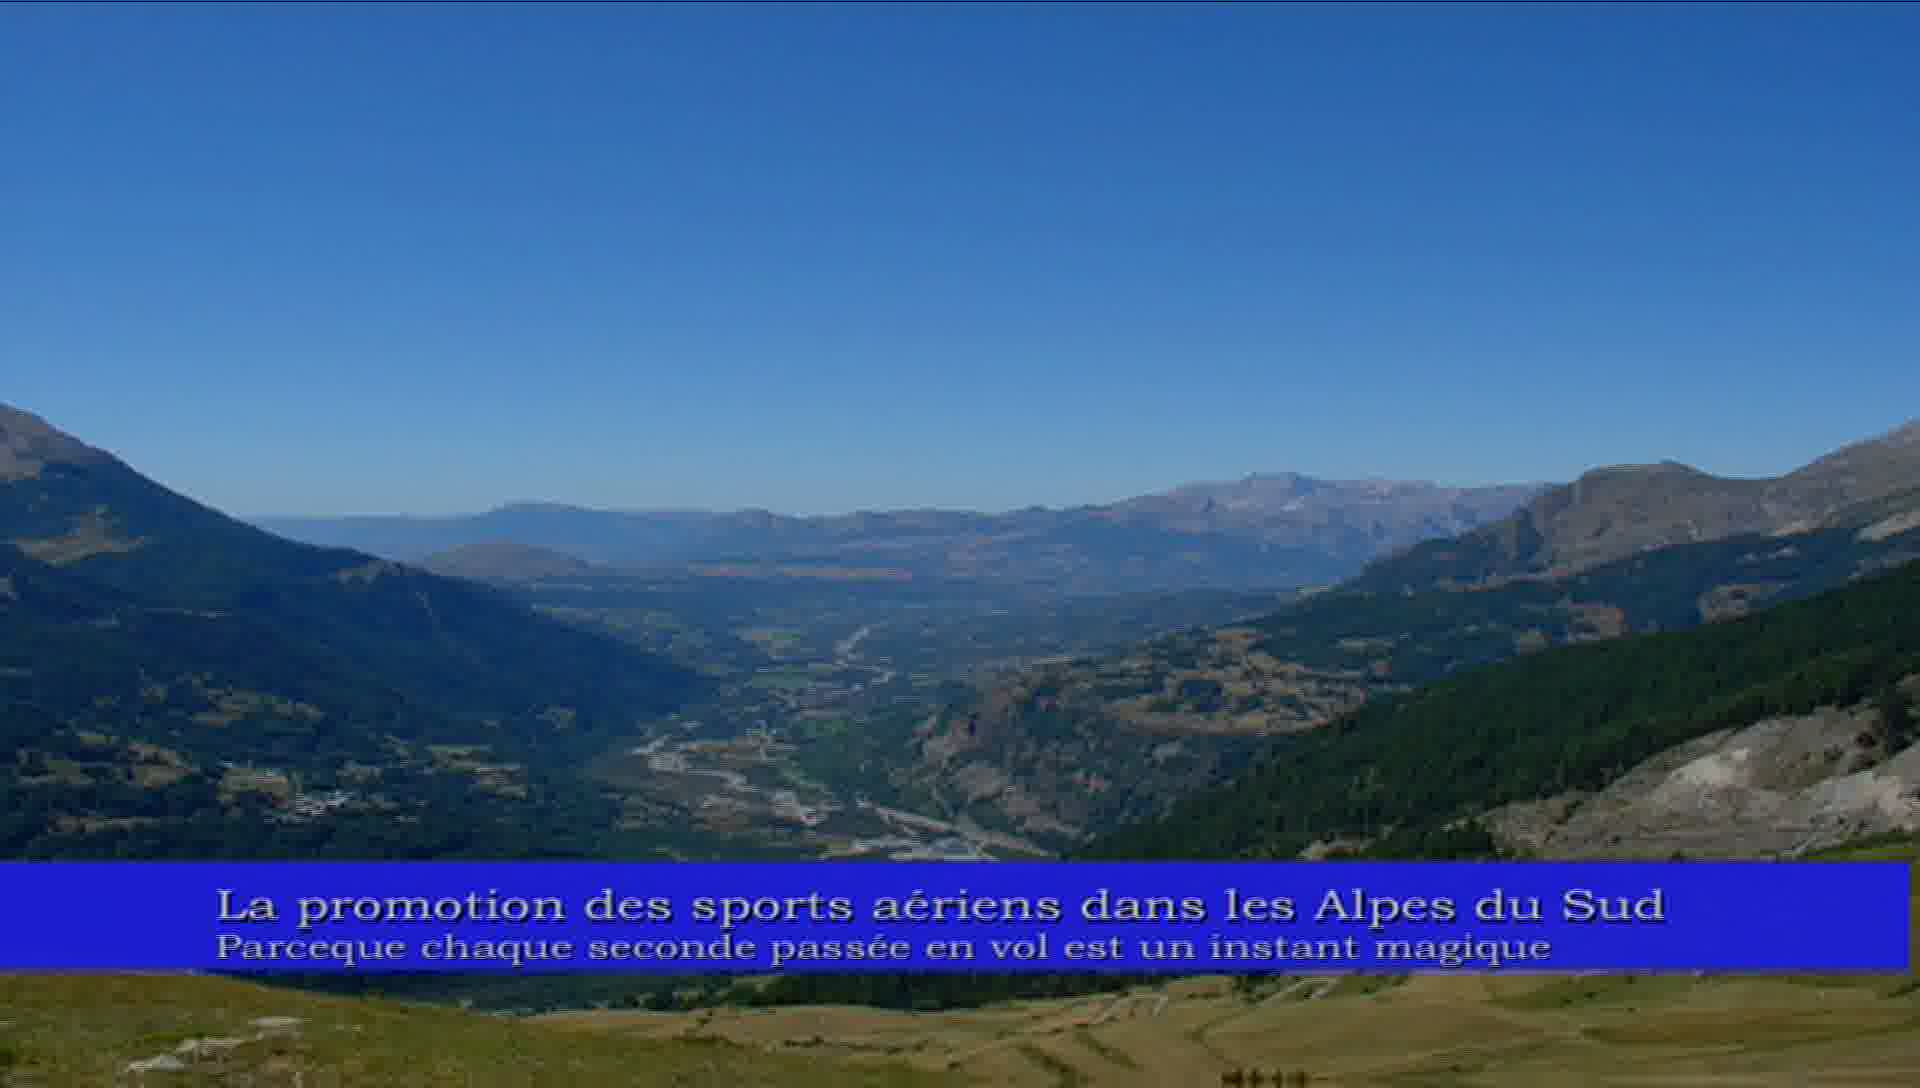 Promotion des sports aériens dans les Alpes du Sud (La)